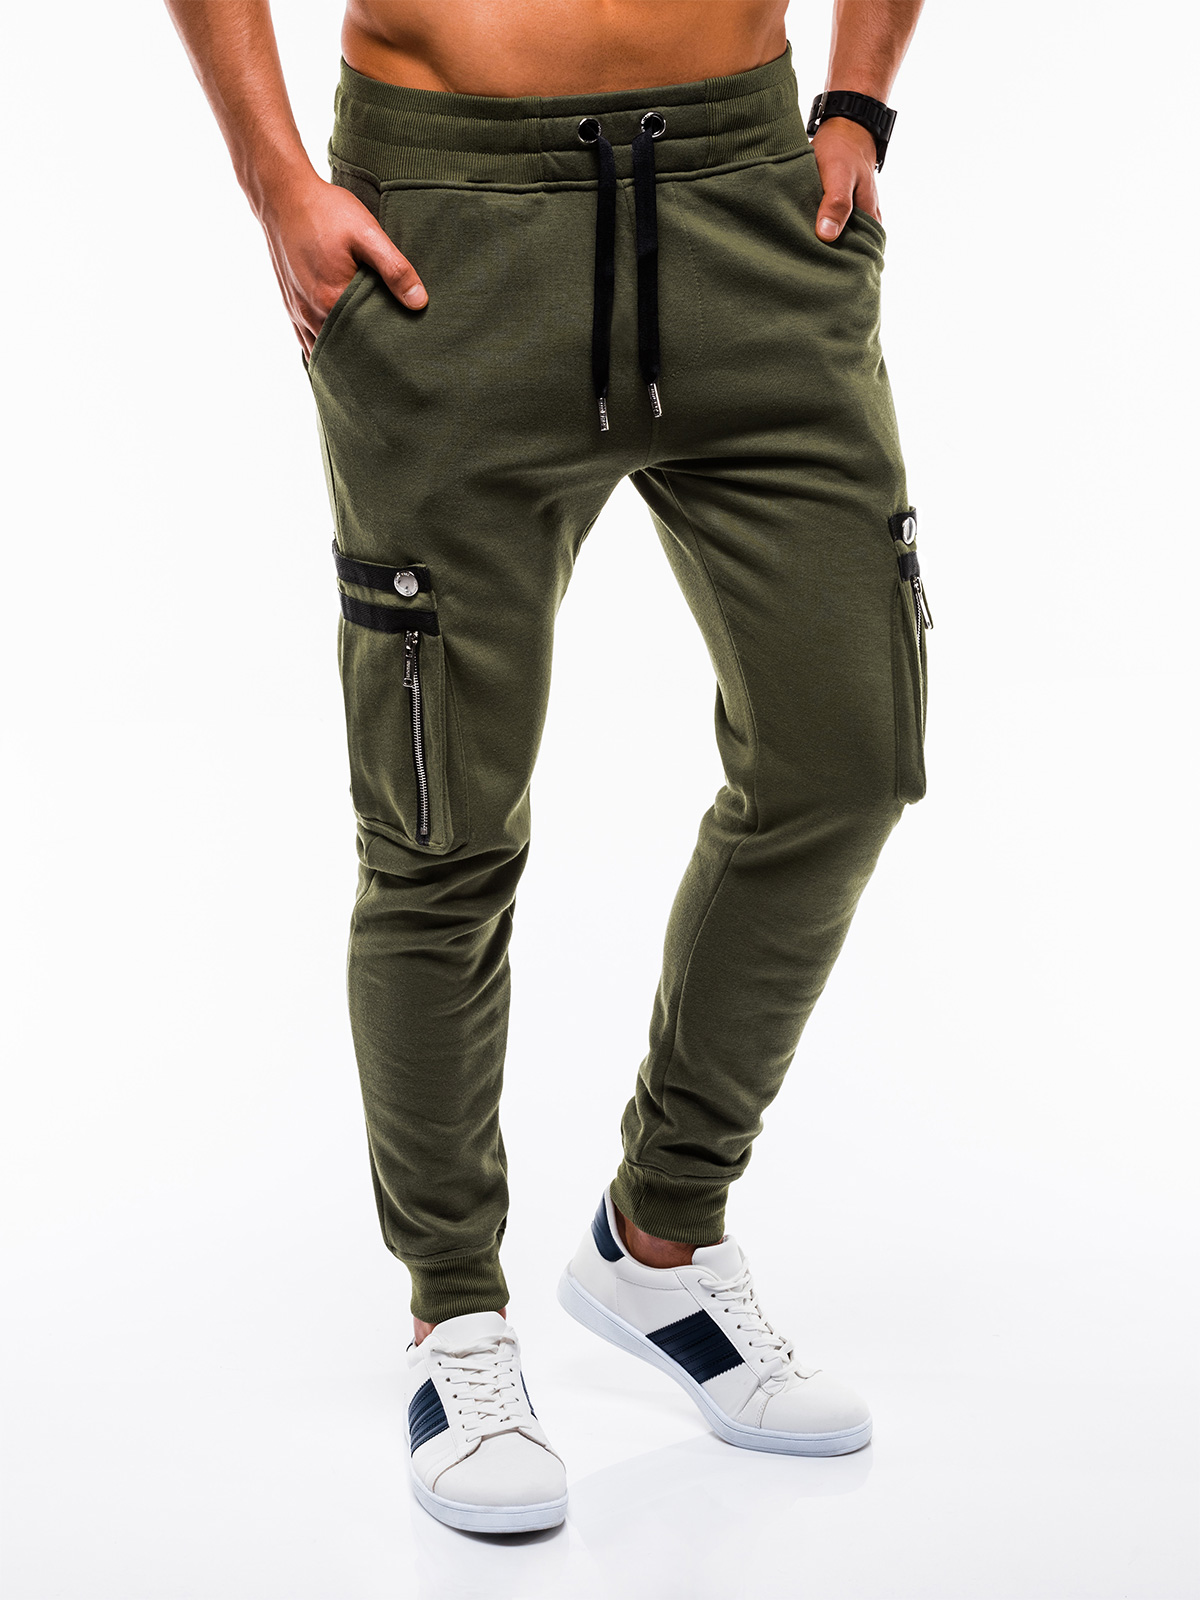 Men's sweatpants P732 - olive | MODONE wholesale - Clothing For Men